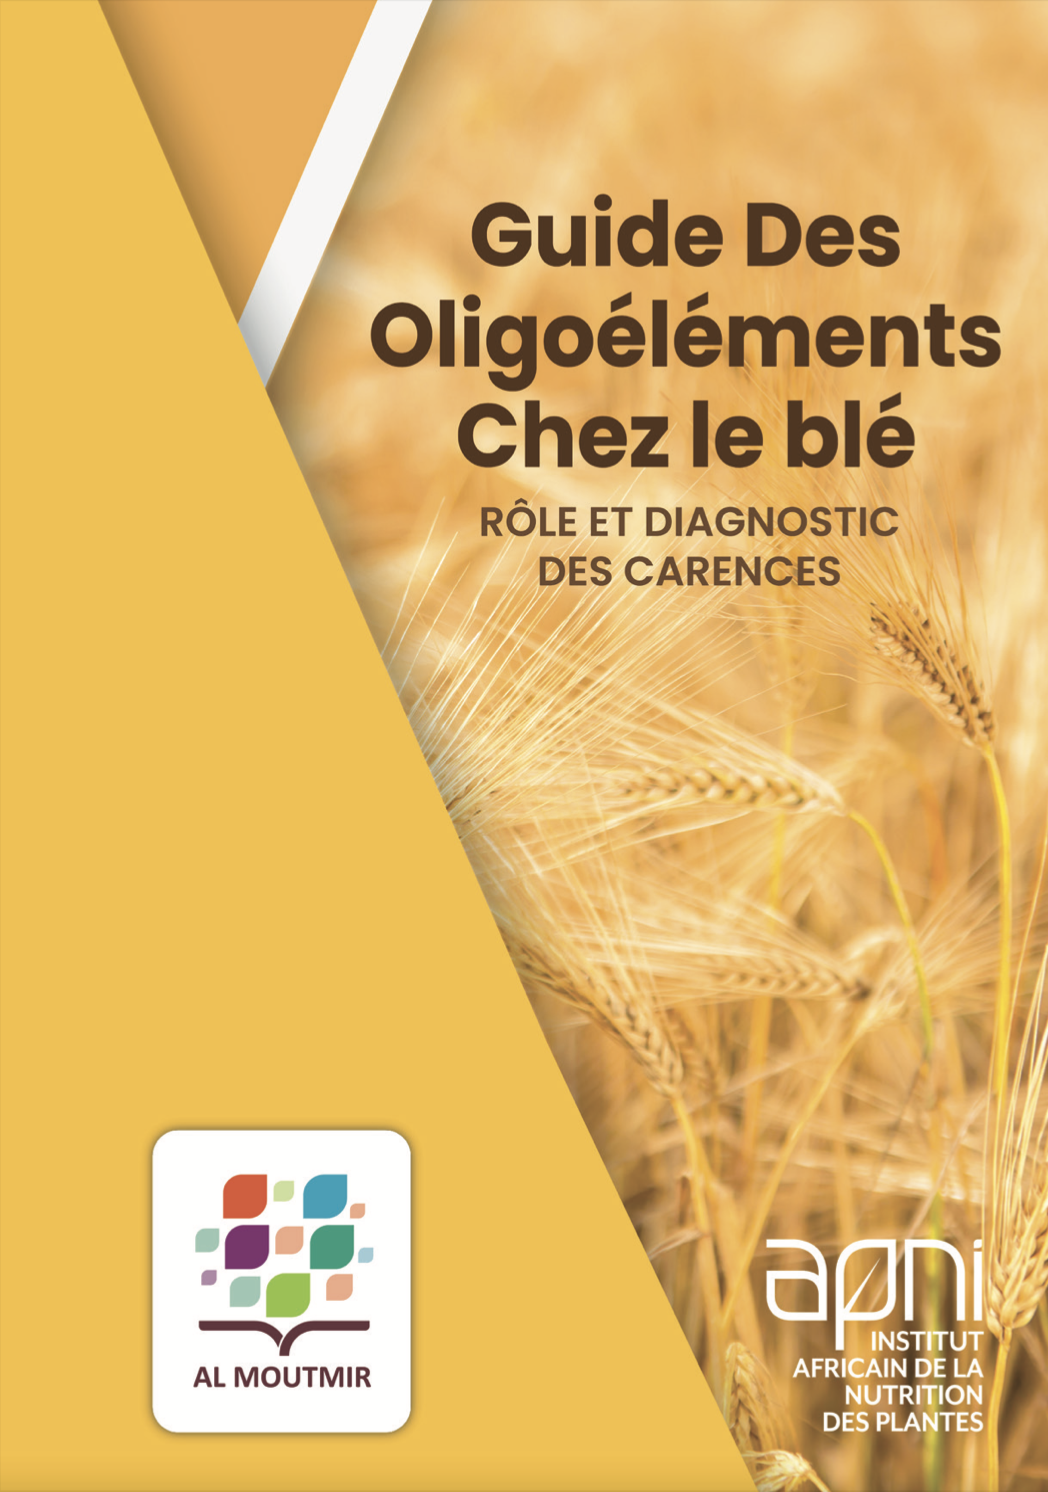 Guide des oligoéléments chez le blé - rôle et diagnostic des carences main image